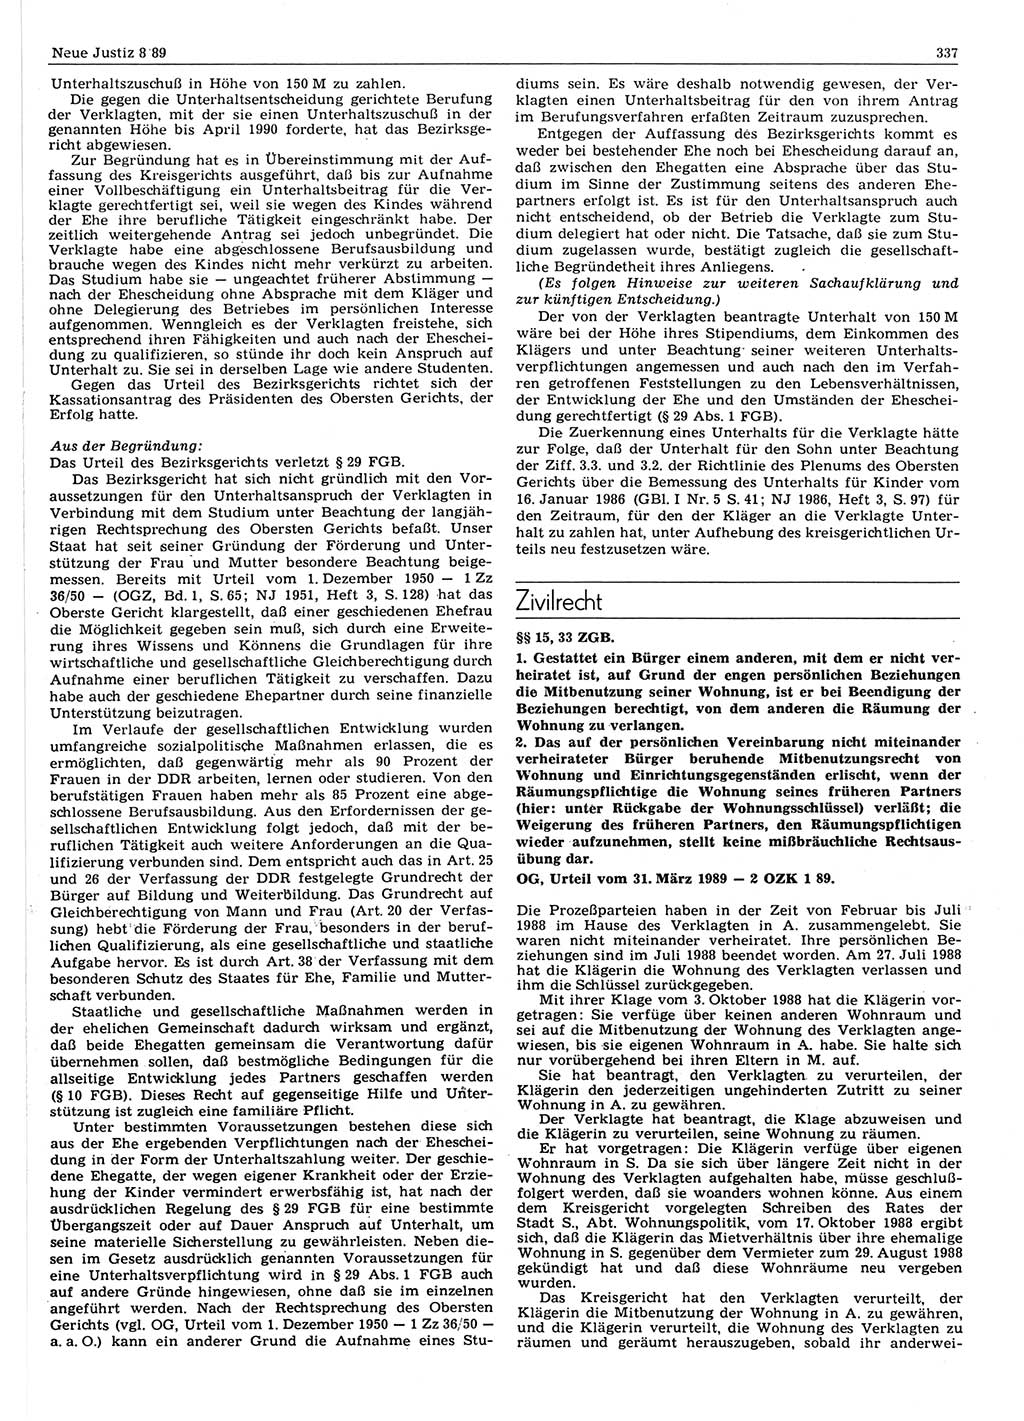 Neue Justiz (NJ), Zeitschrift für sozialistisches Recht und Gesetzlichkeit [Deutsche Demokratische Republik (DDR)], 43. Jahrgang 1989, Seite 337 (NJ DDR 1989, S. 337)